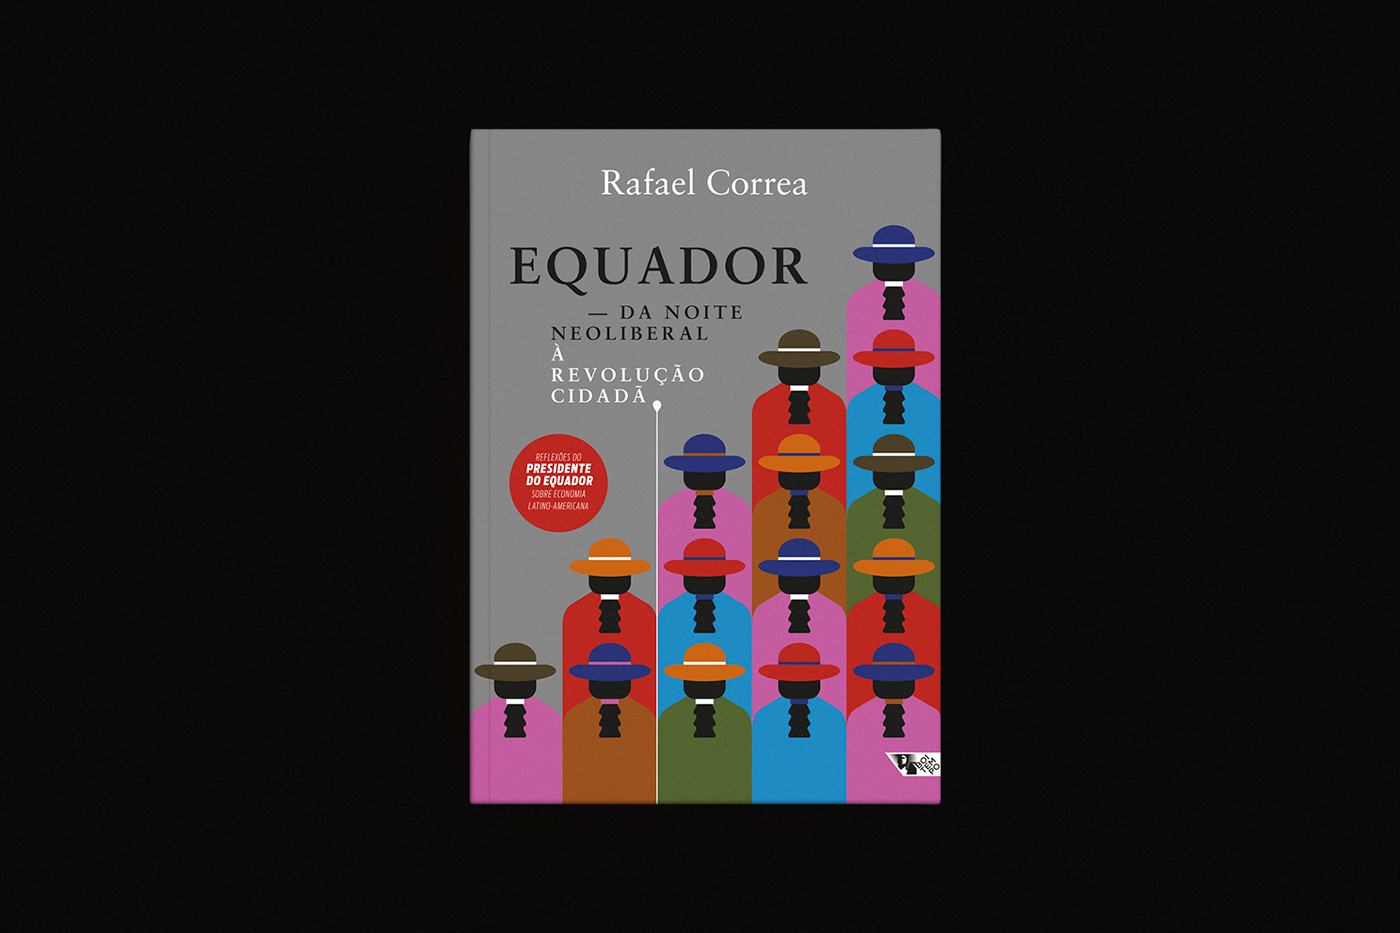 cover book equador rafael correa  Ecuador boitempo